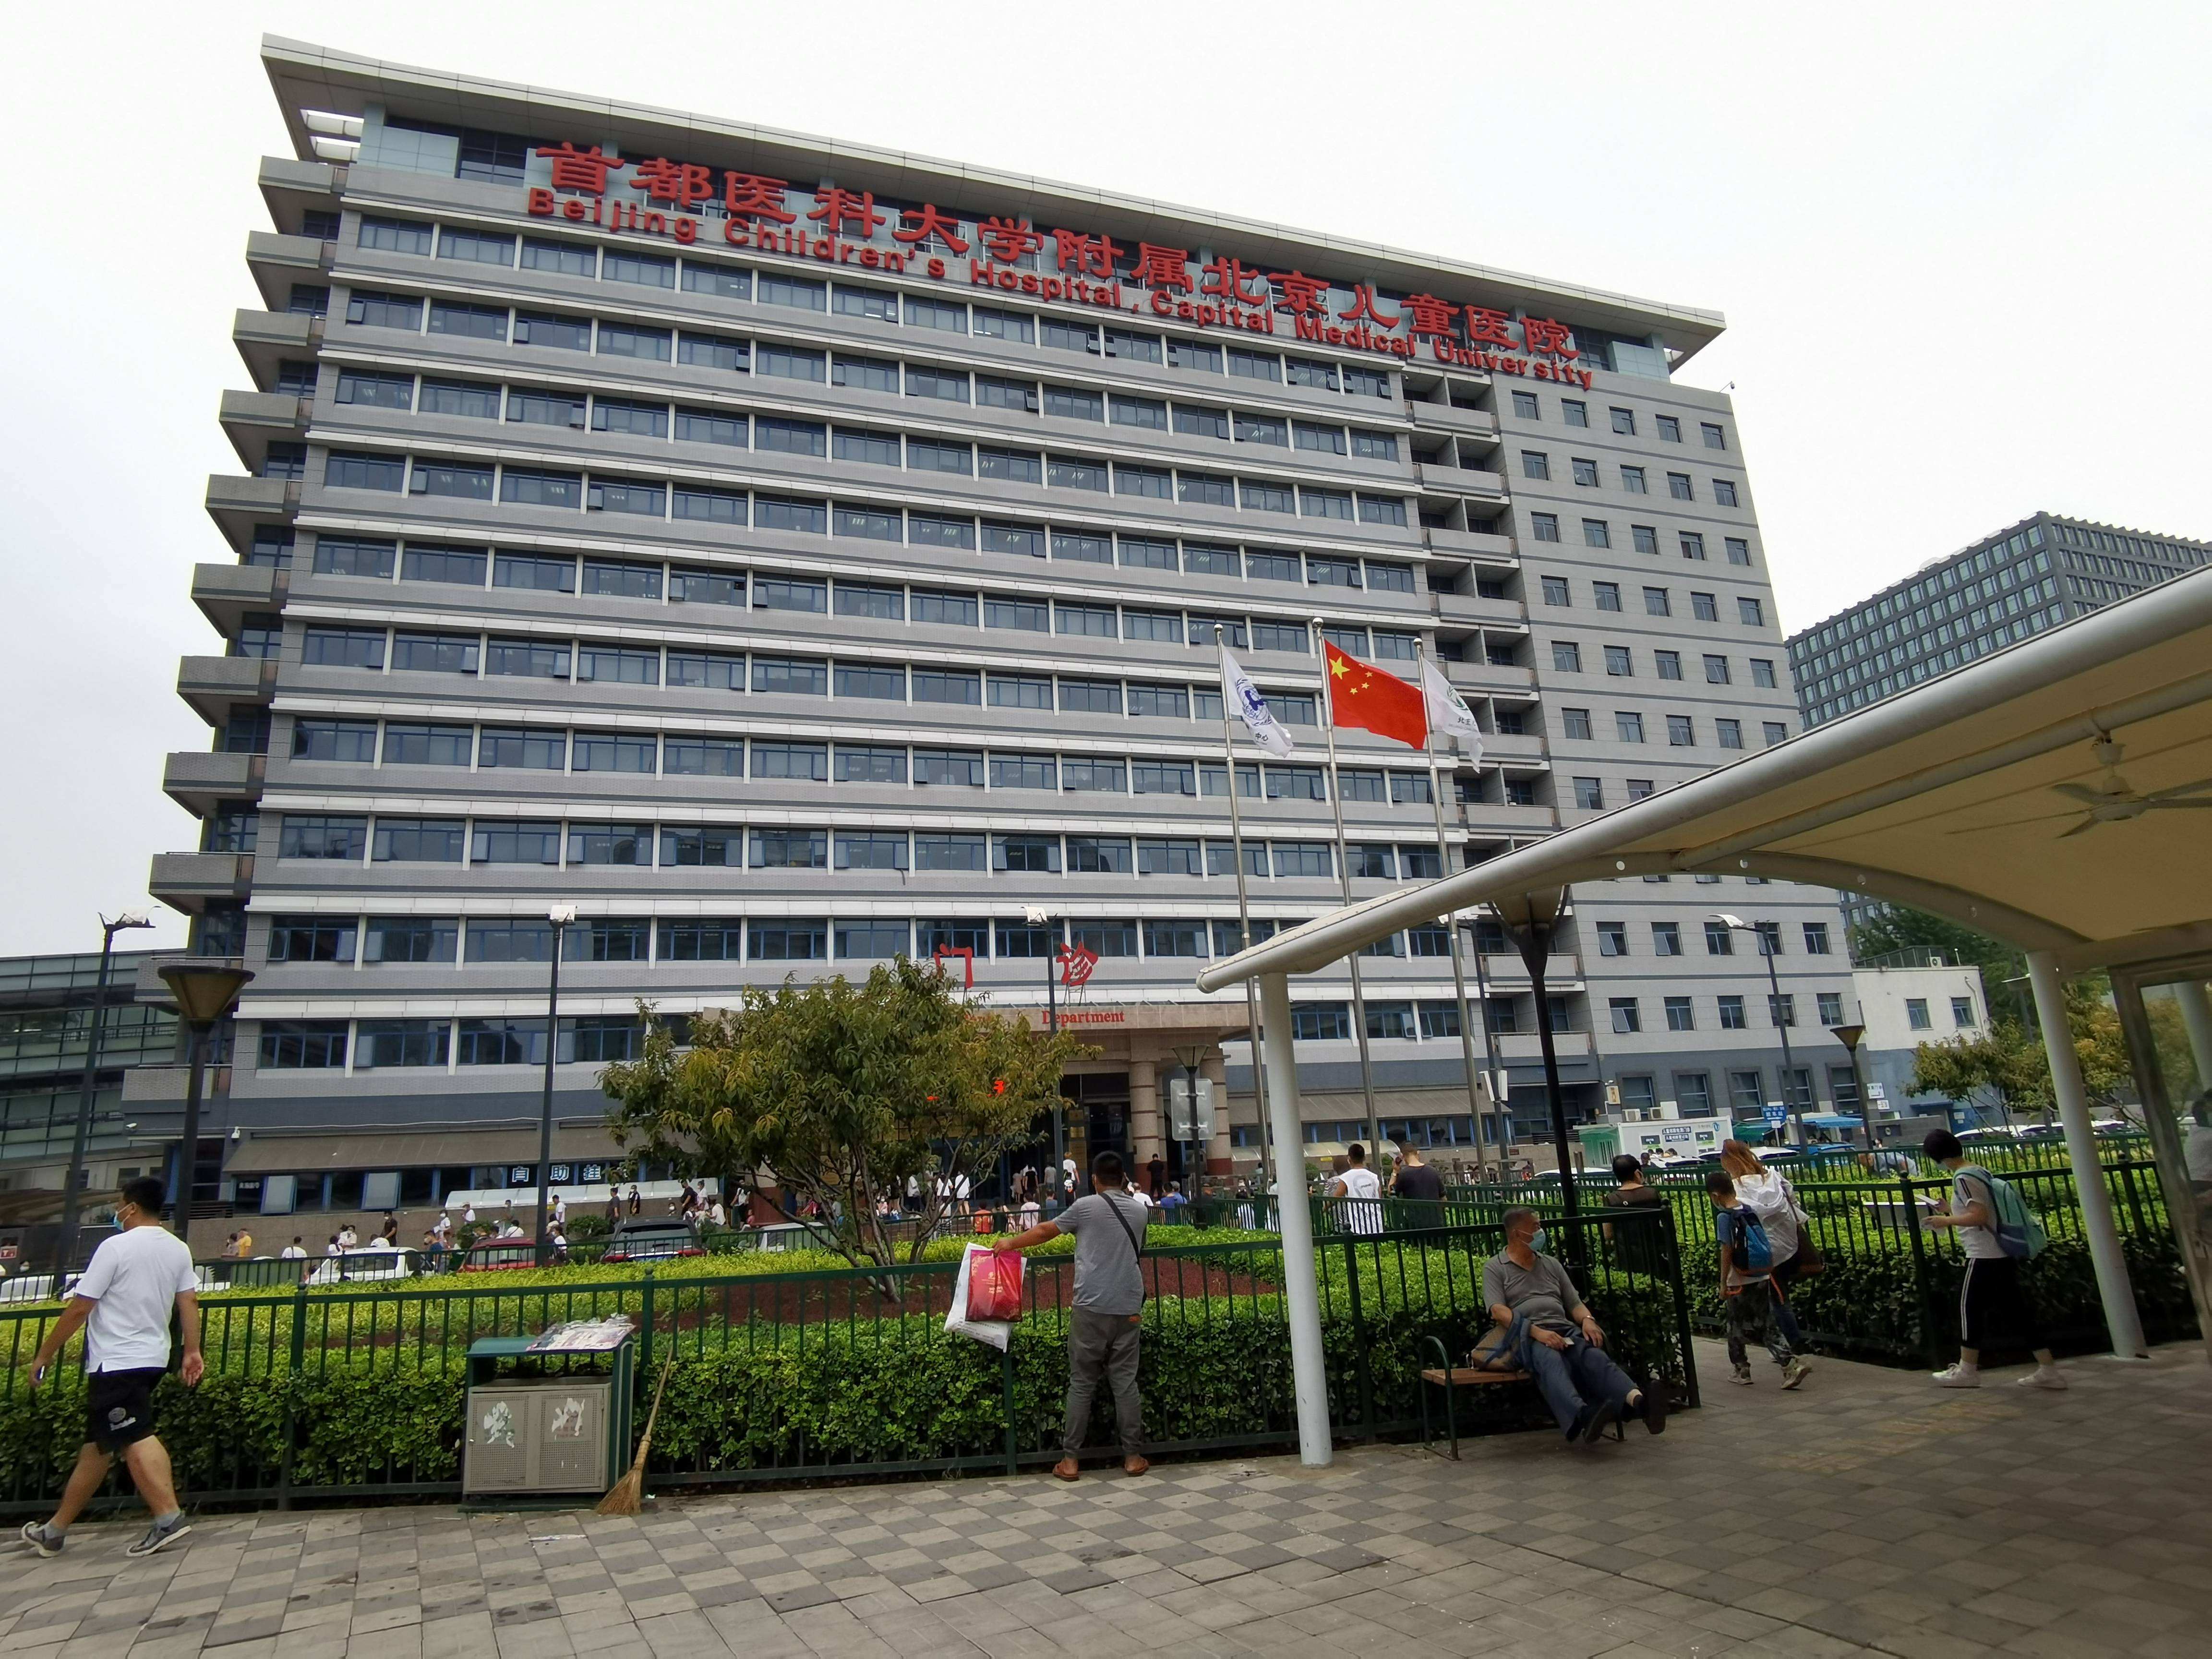 包含首都医科大学附属儿童医院去北京看病指南必知的词条